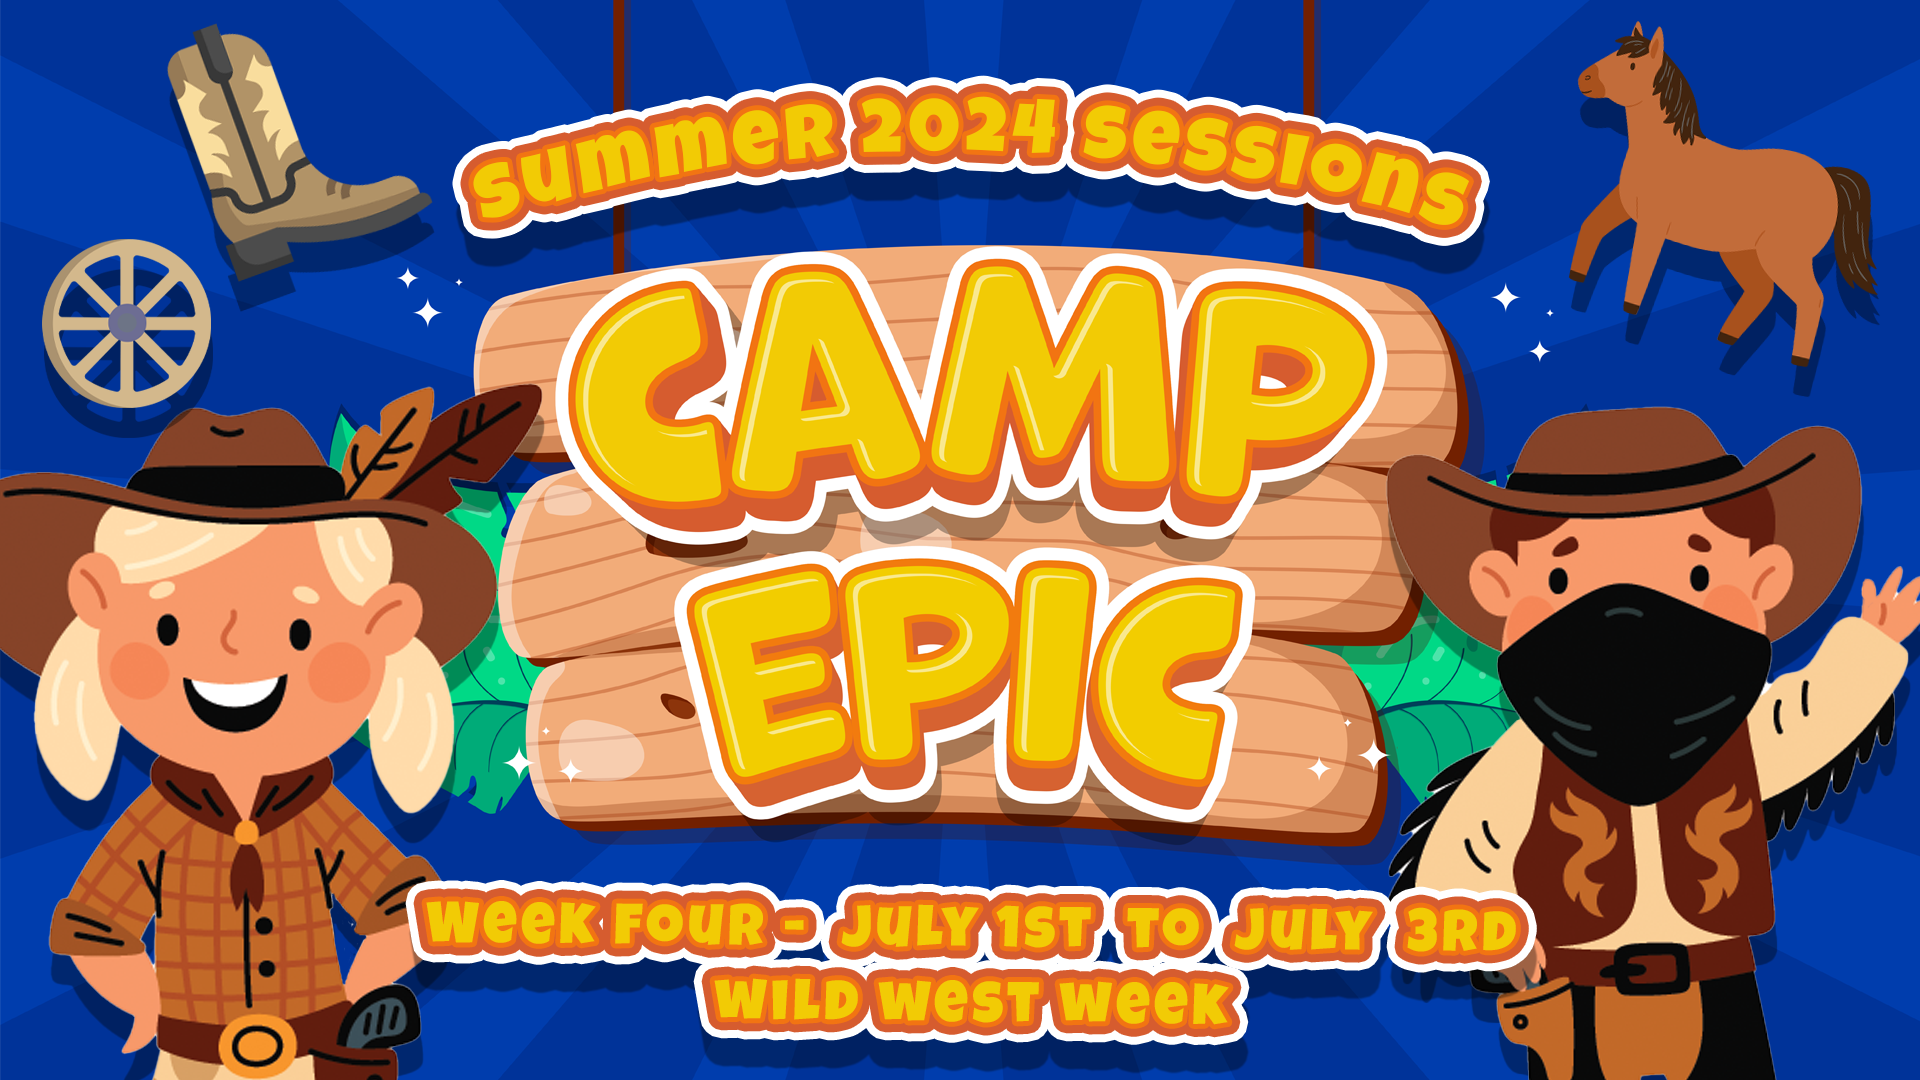 Camp Epic Week 4 V2